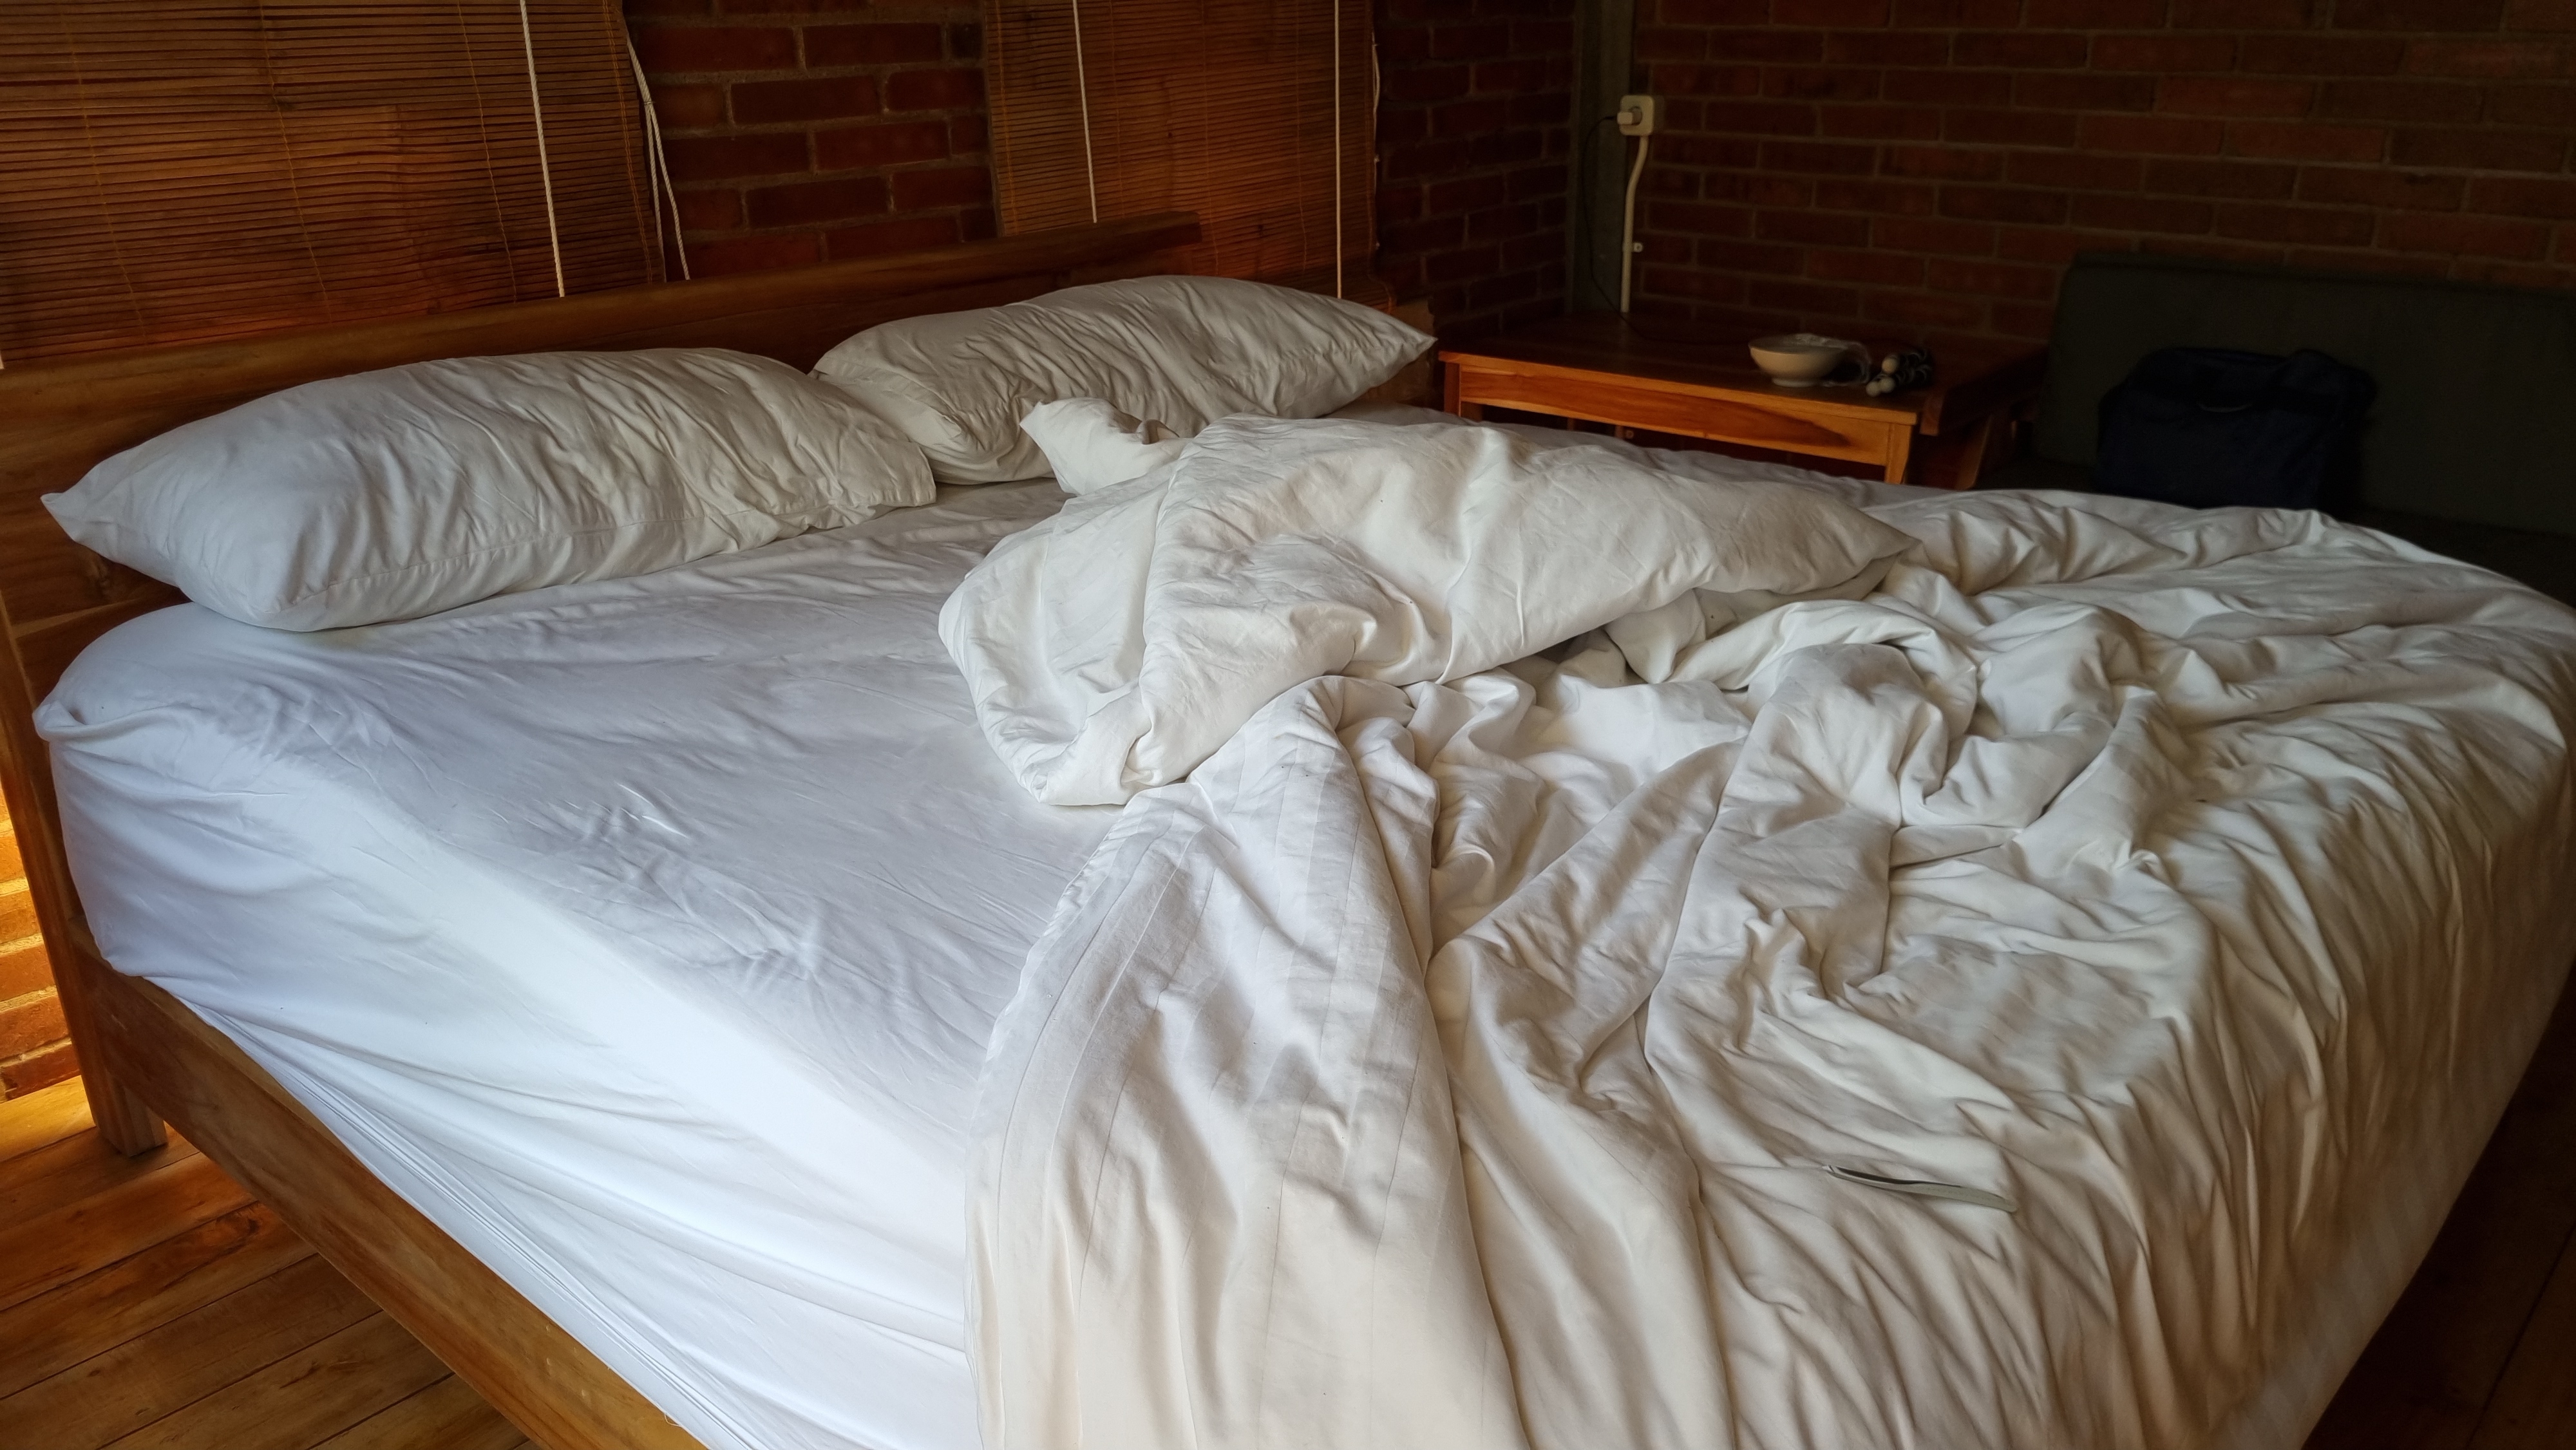 Ein unordentliches, ungemachtes Bett | Quelle: Shutterstock